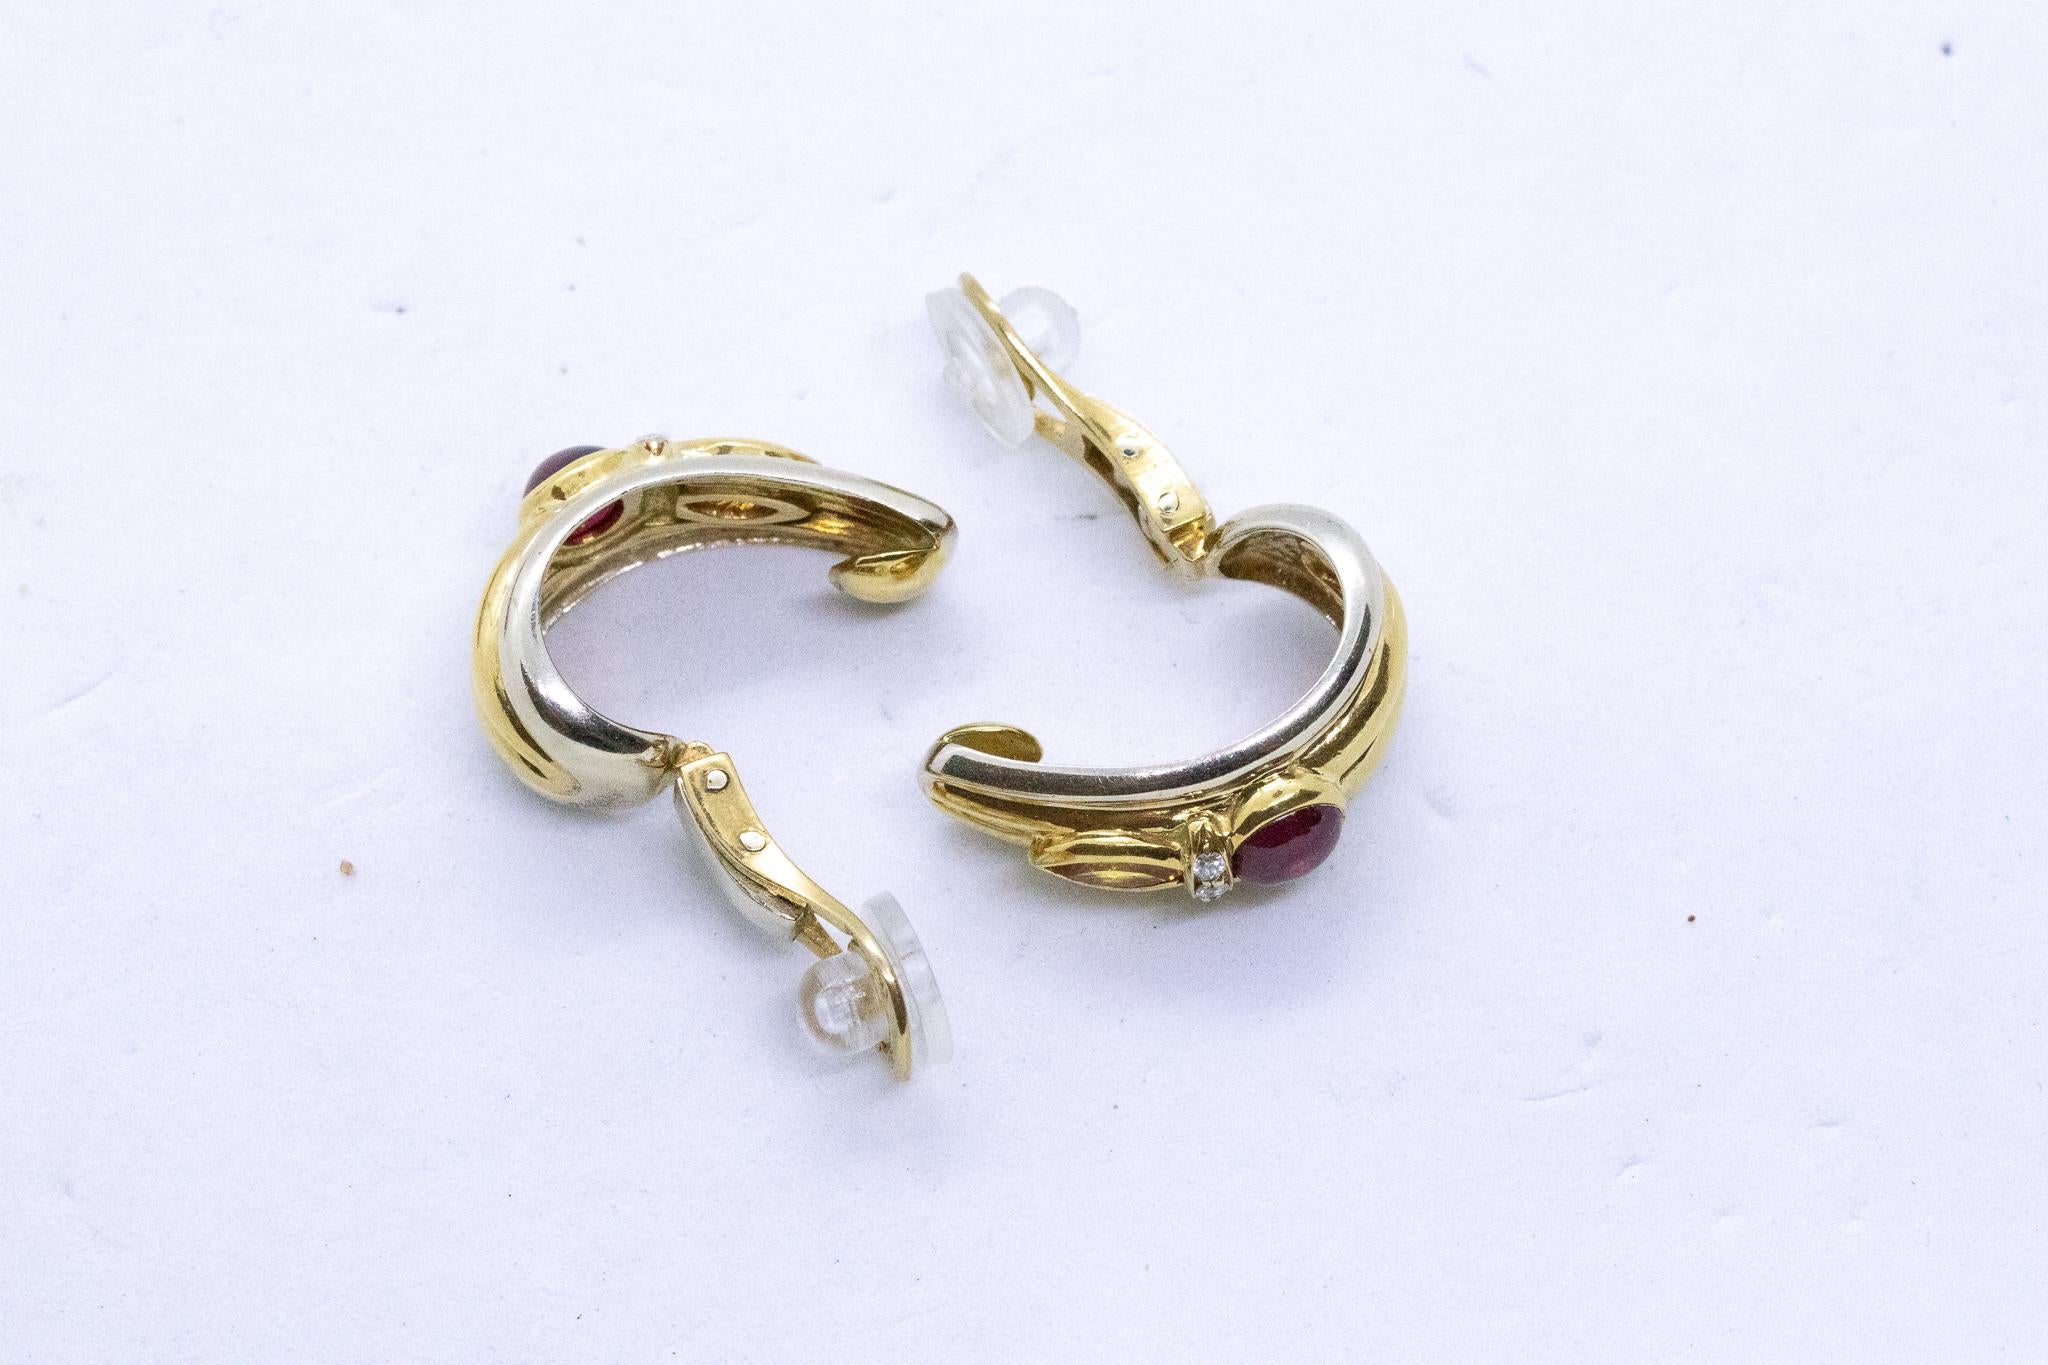  Chaumet Paris Clips d'oreilles en or 18 carats avec rubis, saphirs et diamants de 2,34 carats Pour femmes 